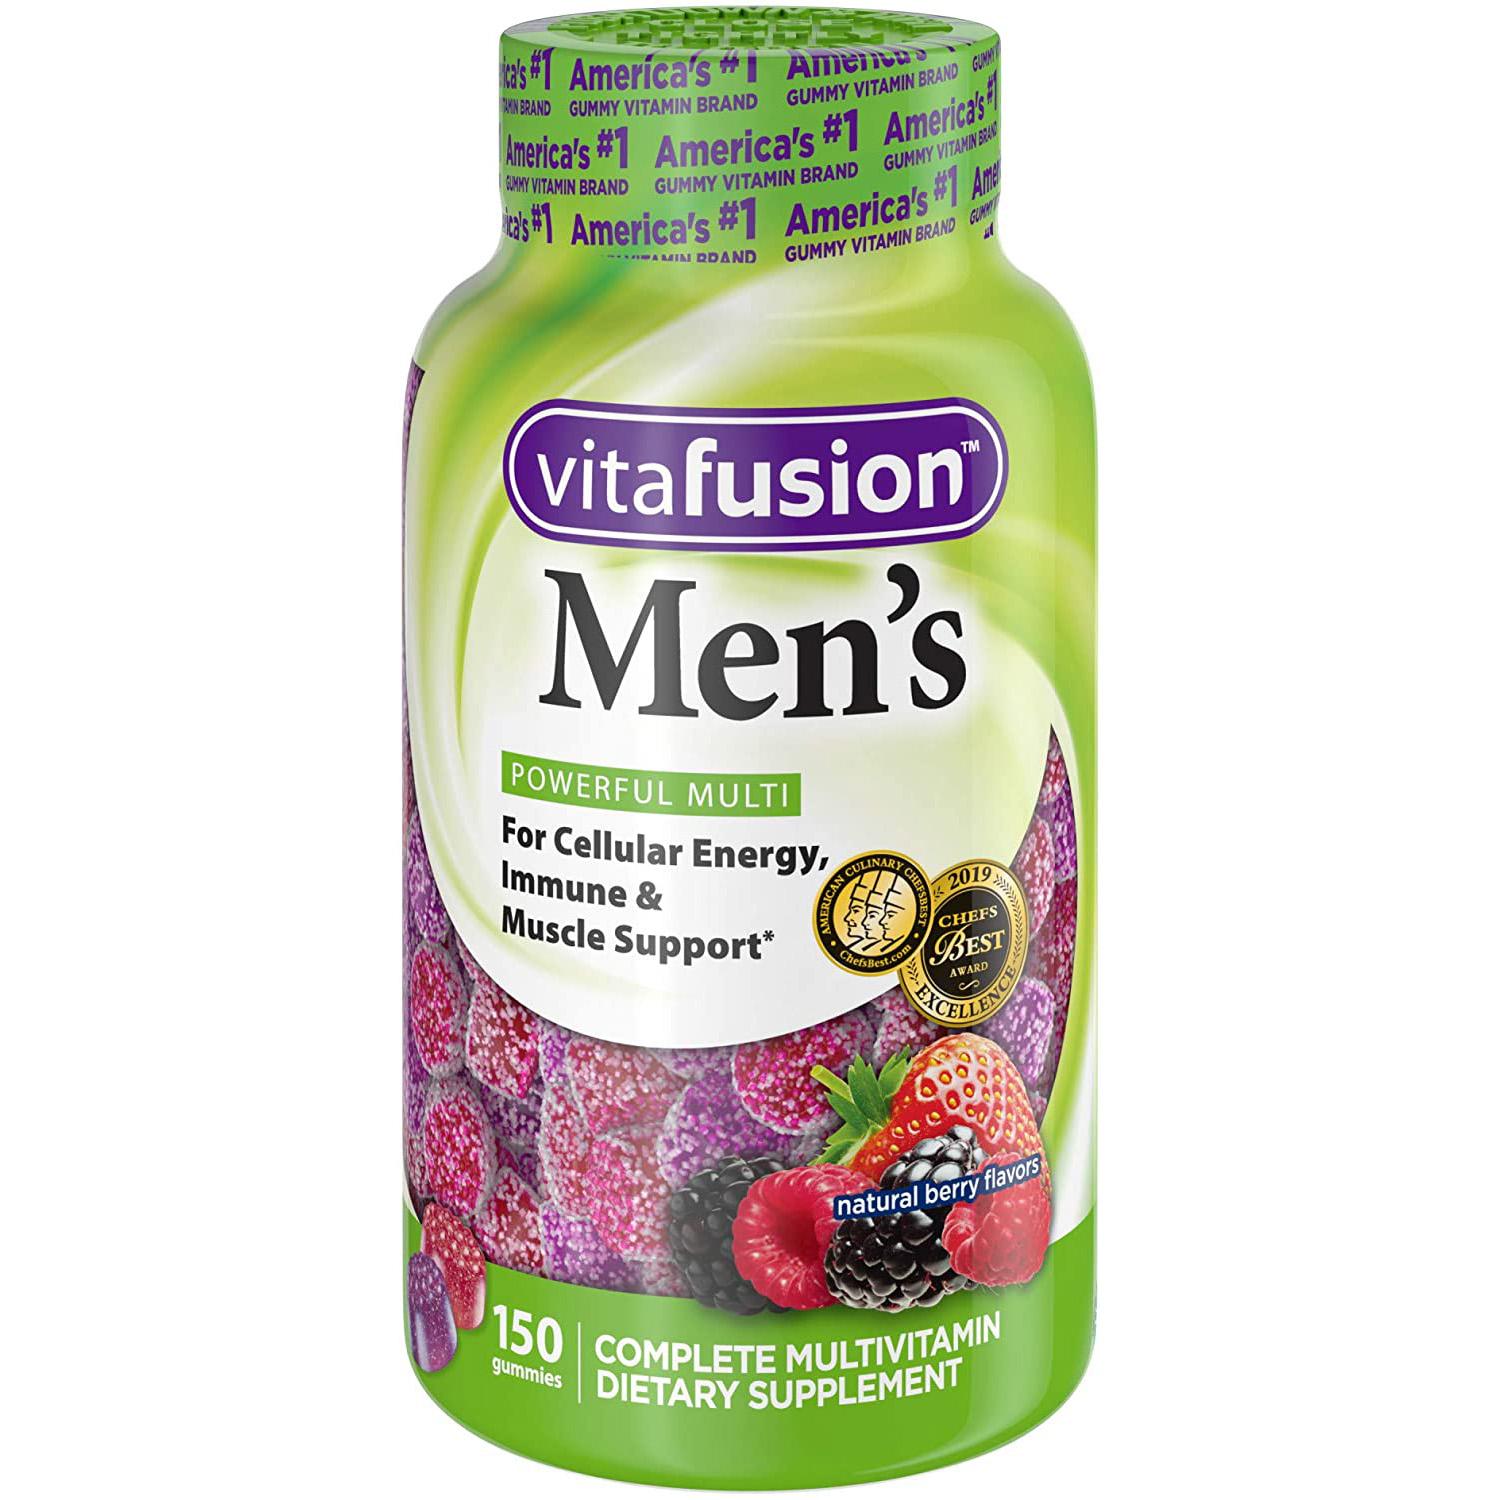 Vitafusion Mens Gummy Multivitamin for $9.39 Shipped